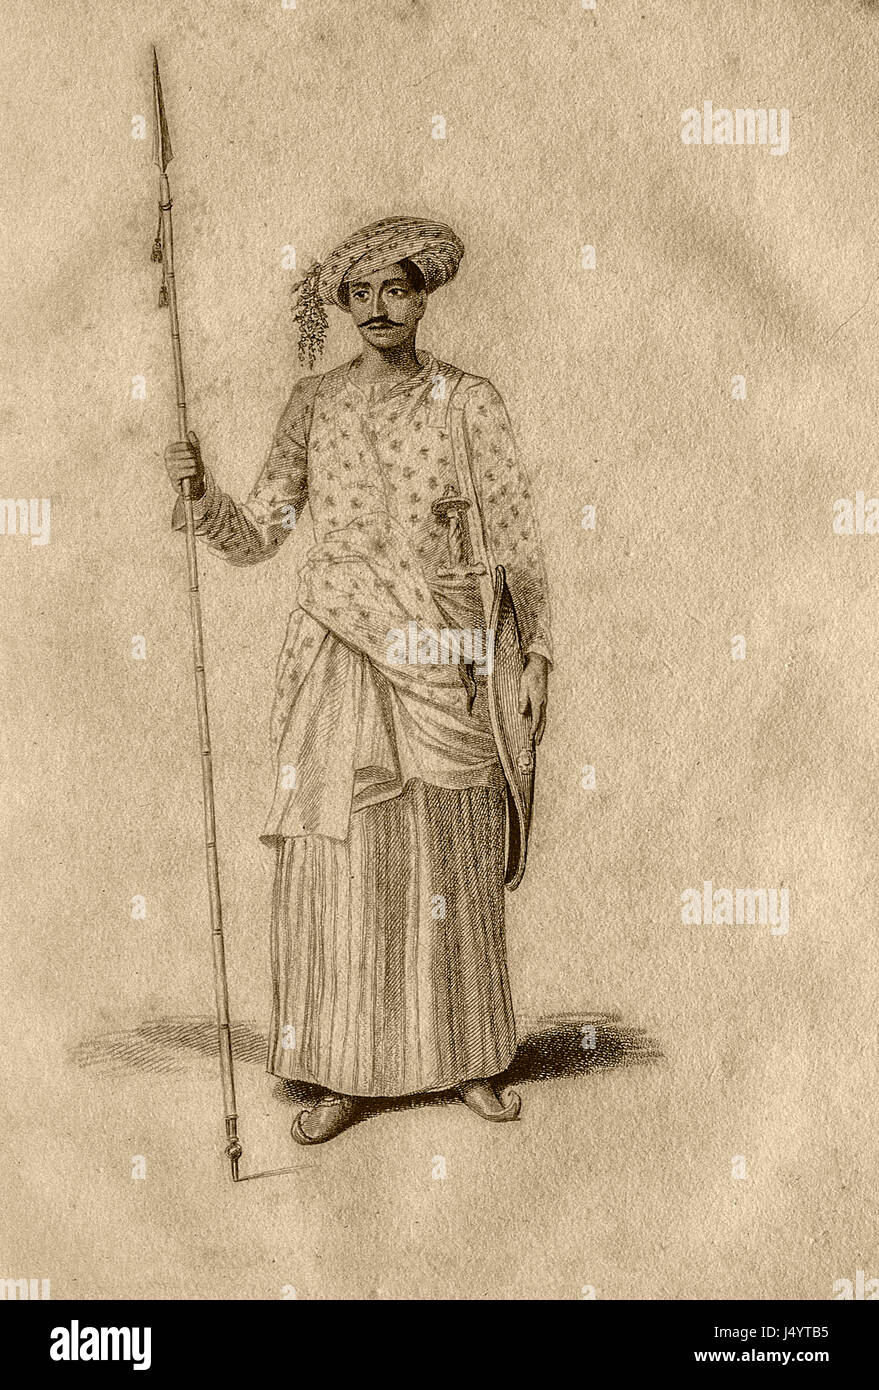 Soldato indiano con lancia, India, Asia, asiatico, indiano, vecchio disegno d'epoca del 1700 Foto Stock